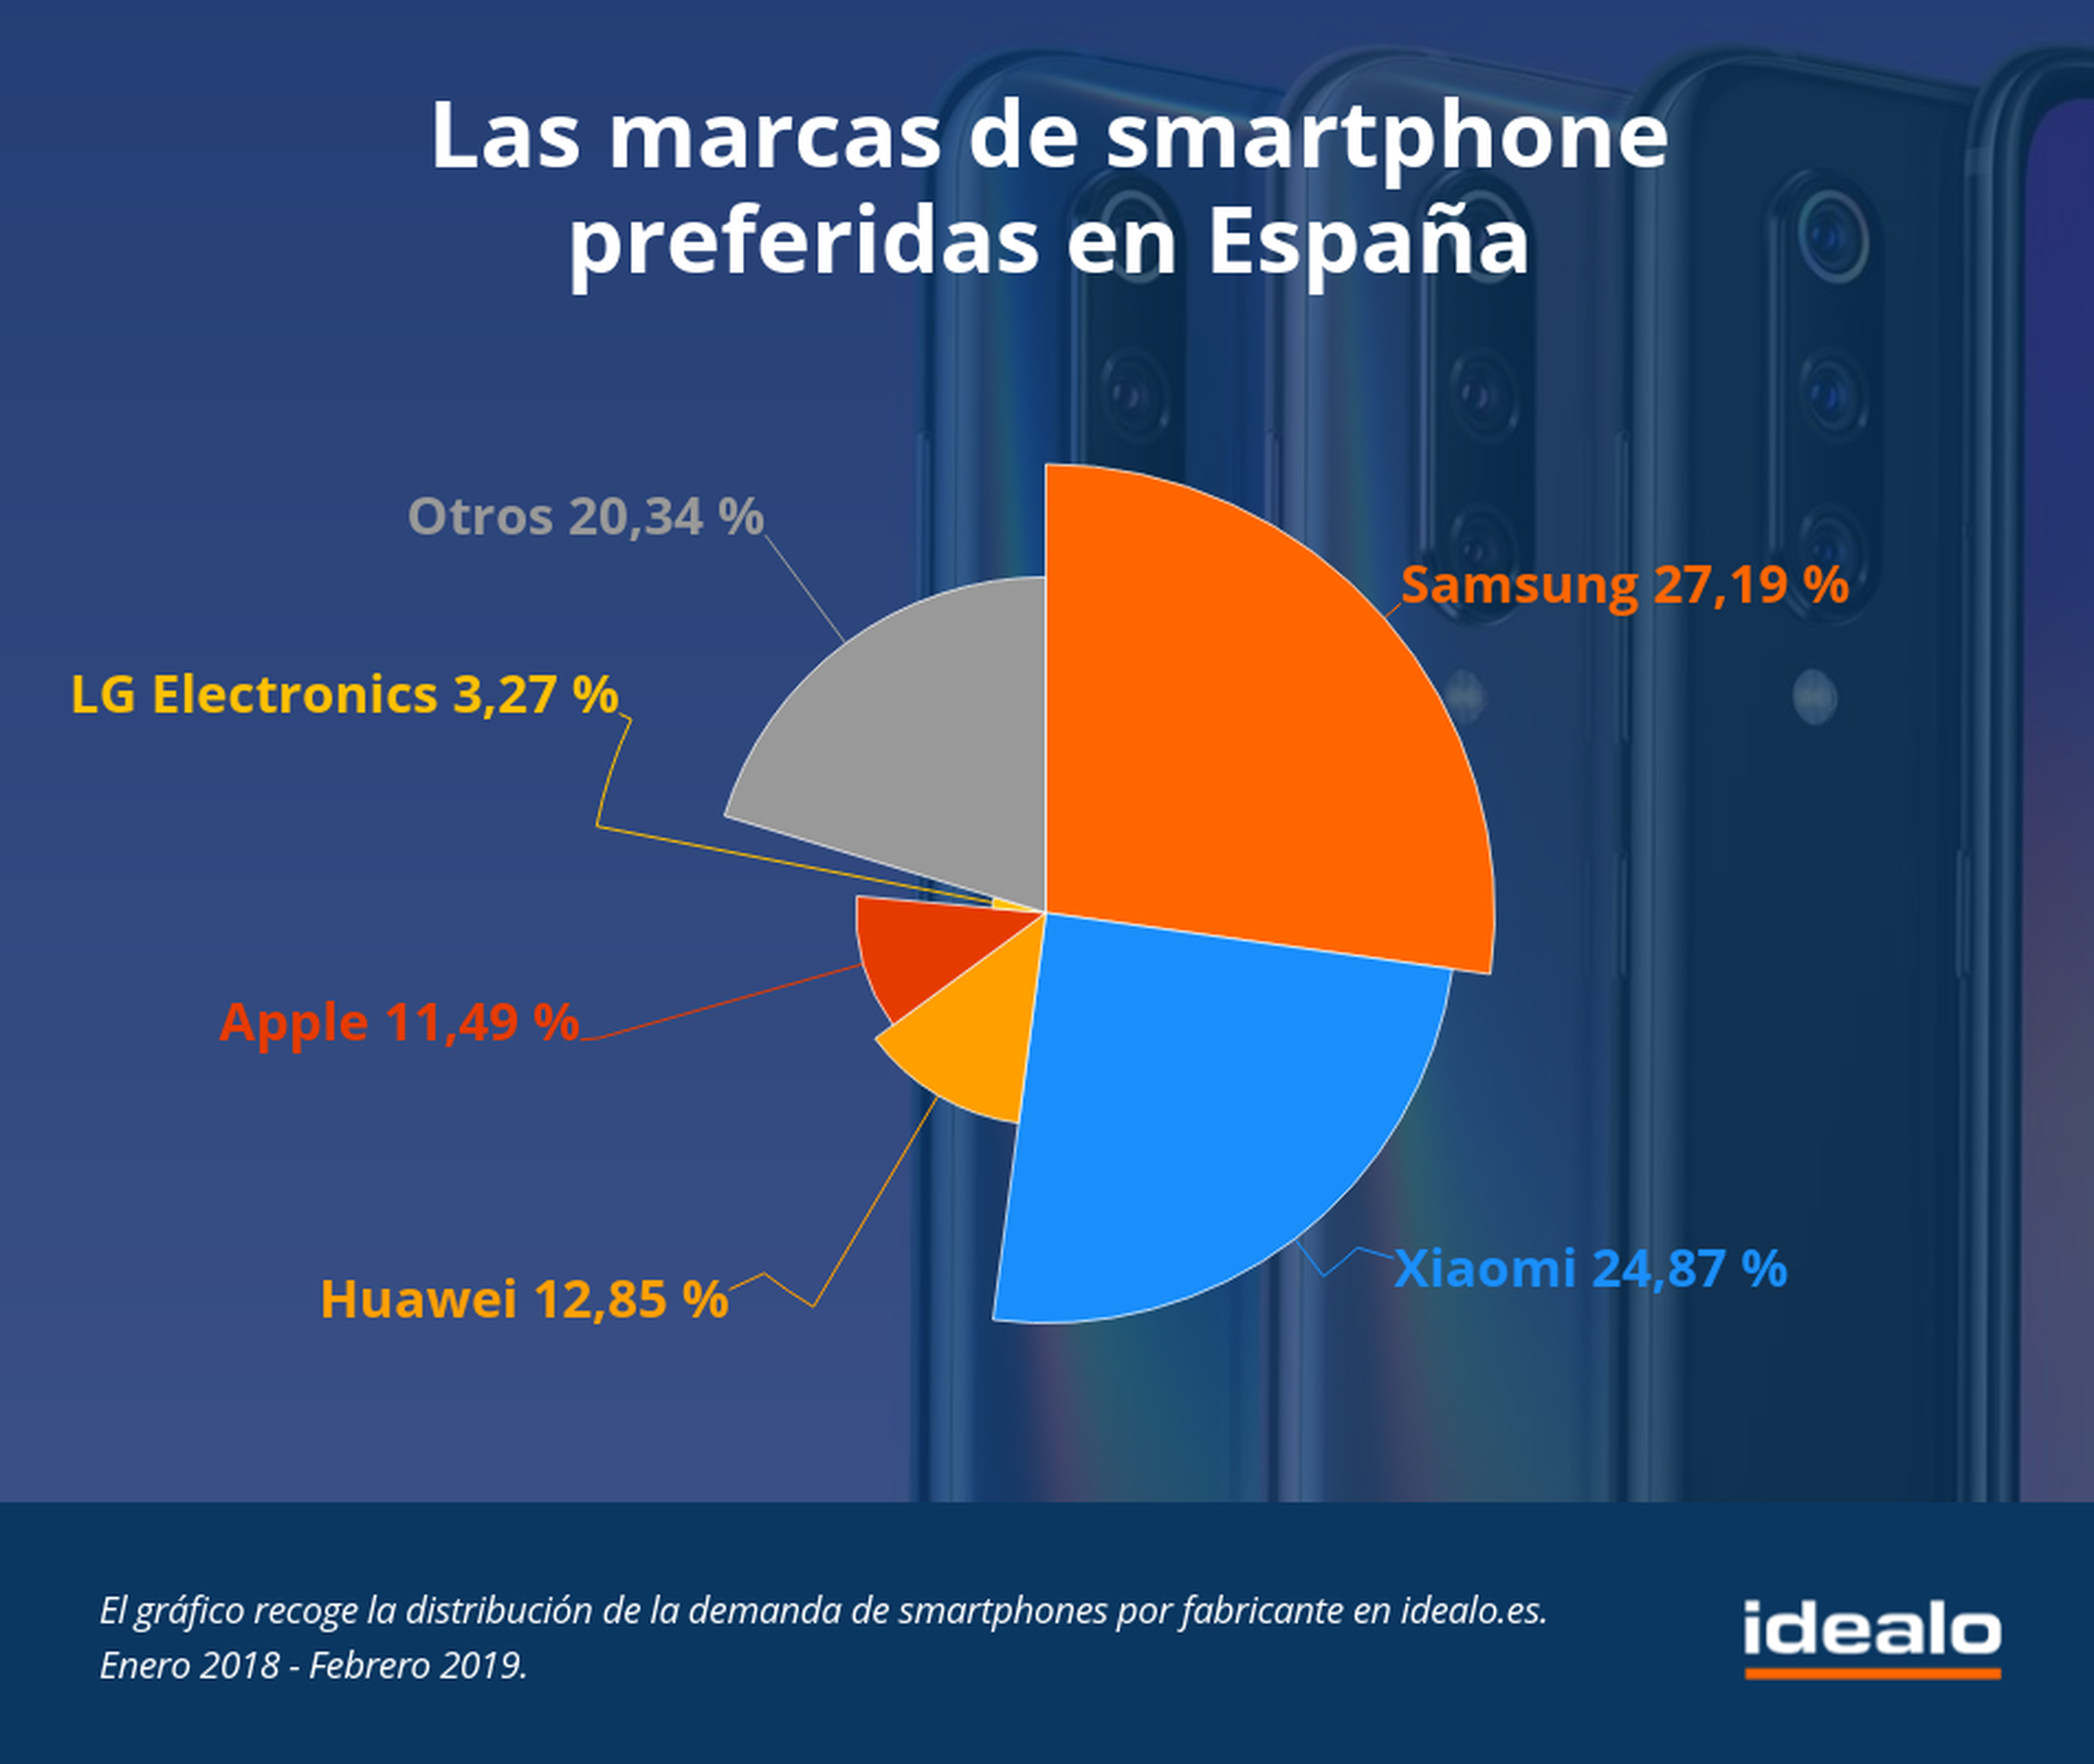 Idealo.es gráfica de la preferencia de móviles en España